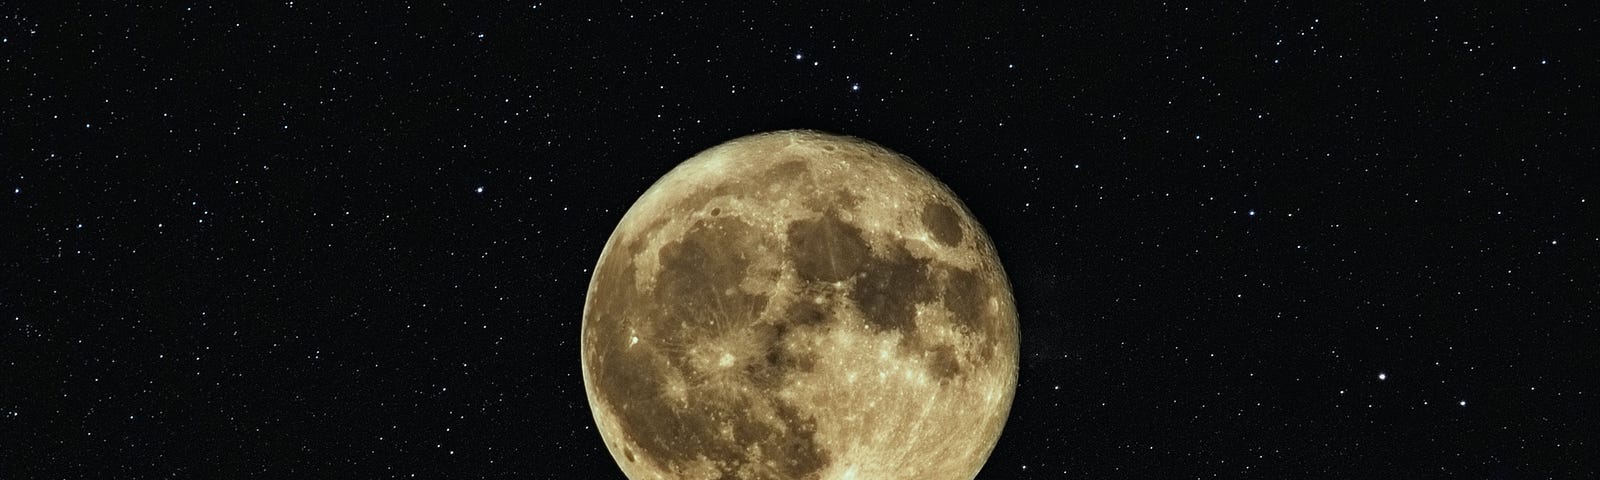 full moon in a starry sky